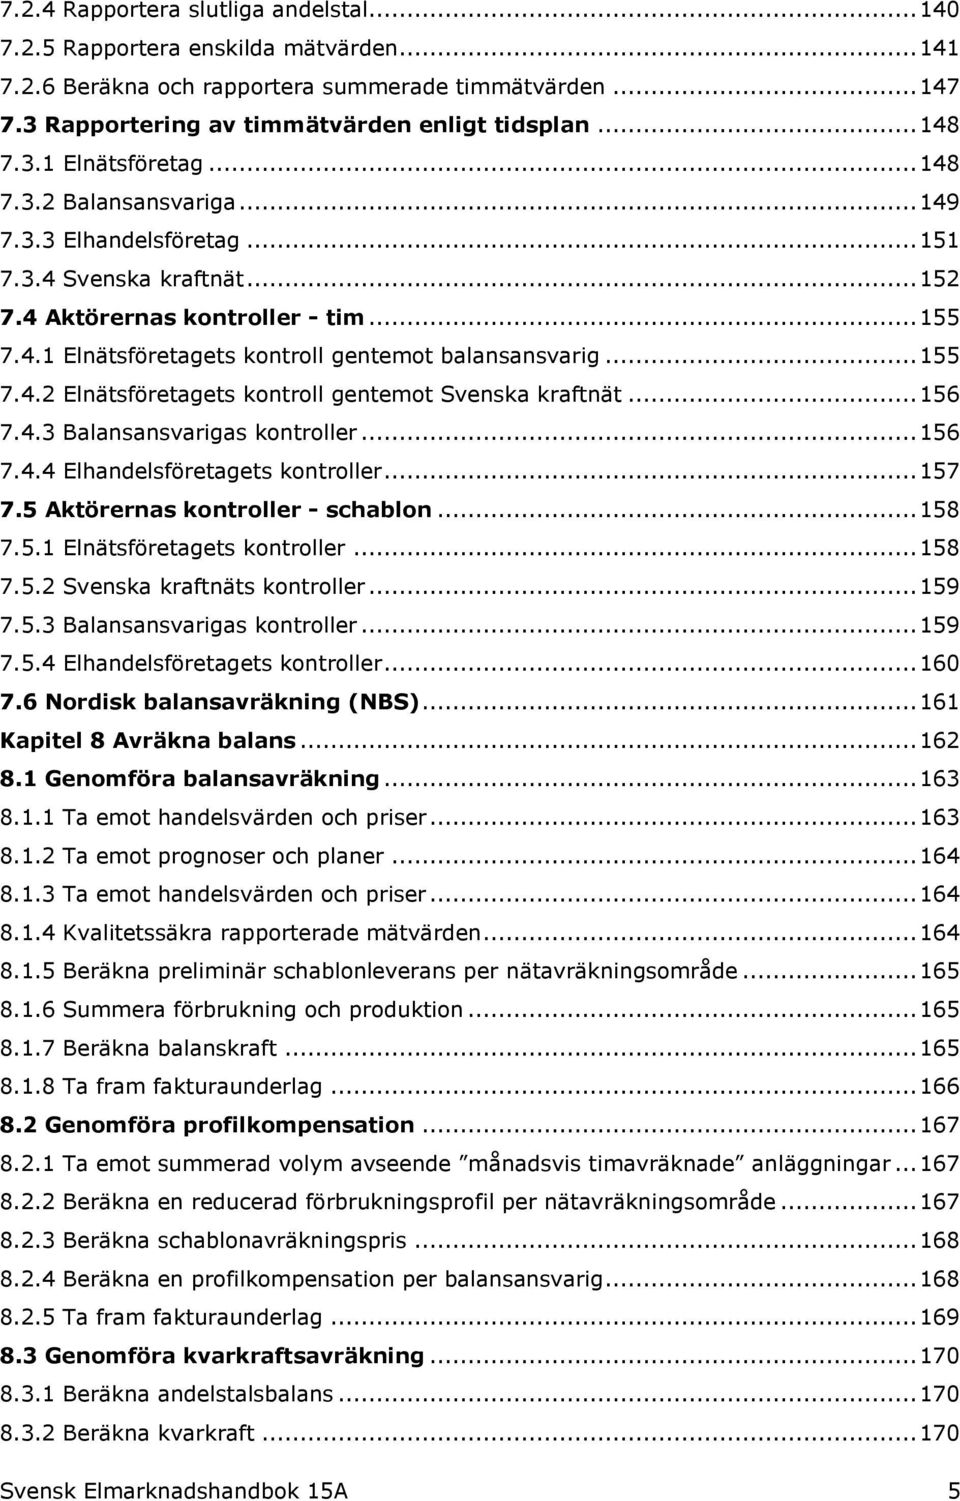 .. 155 7.4.2 Elnätsföretagets kontroll gentemot Svenska kraftnät... 156 7.4.3 Balansansvarigas kontroller... 156 7.4.4 Elhandelsföretagets kontroller... 157 7.5 Aktörernas kontroller - schablon.